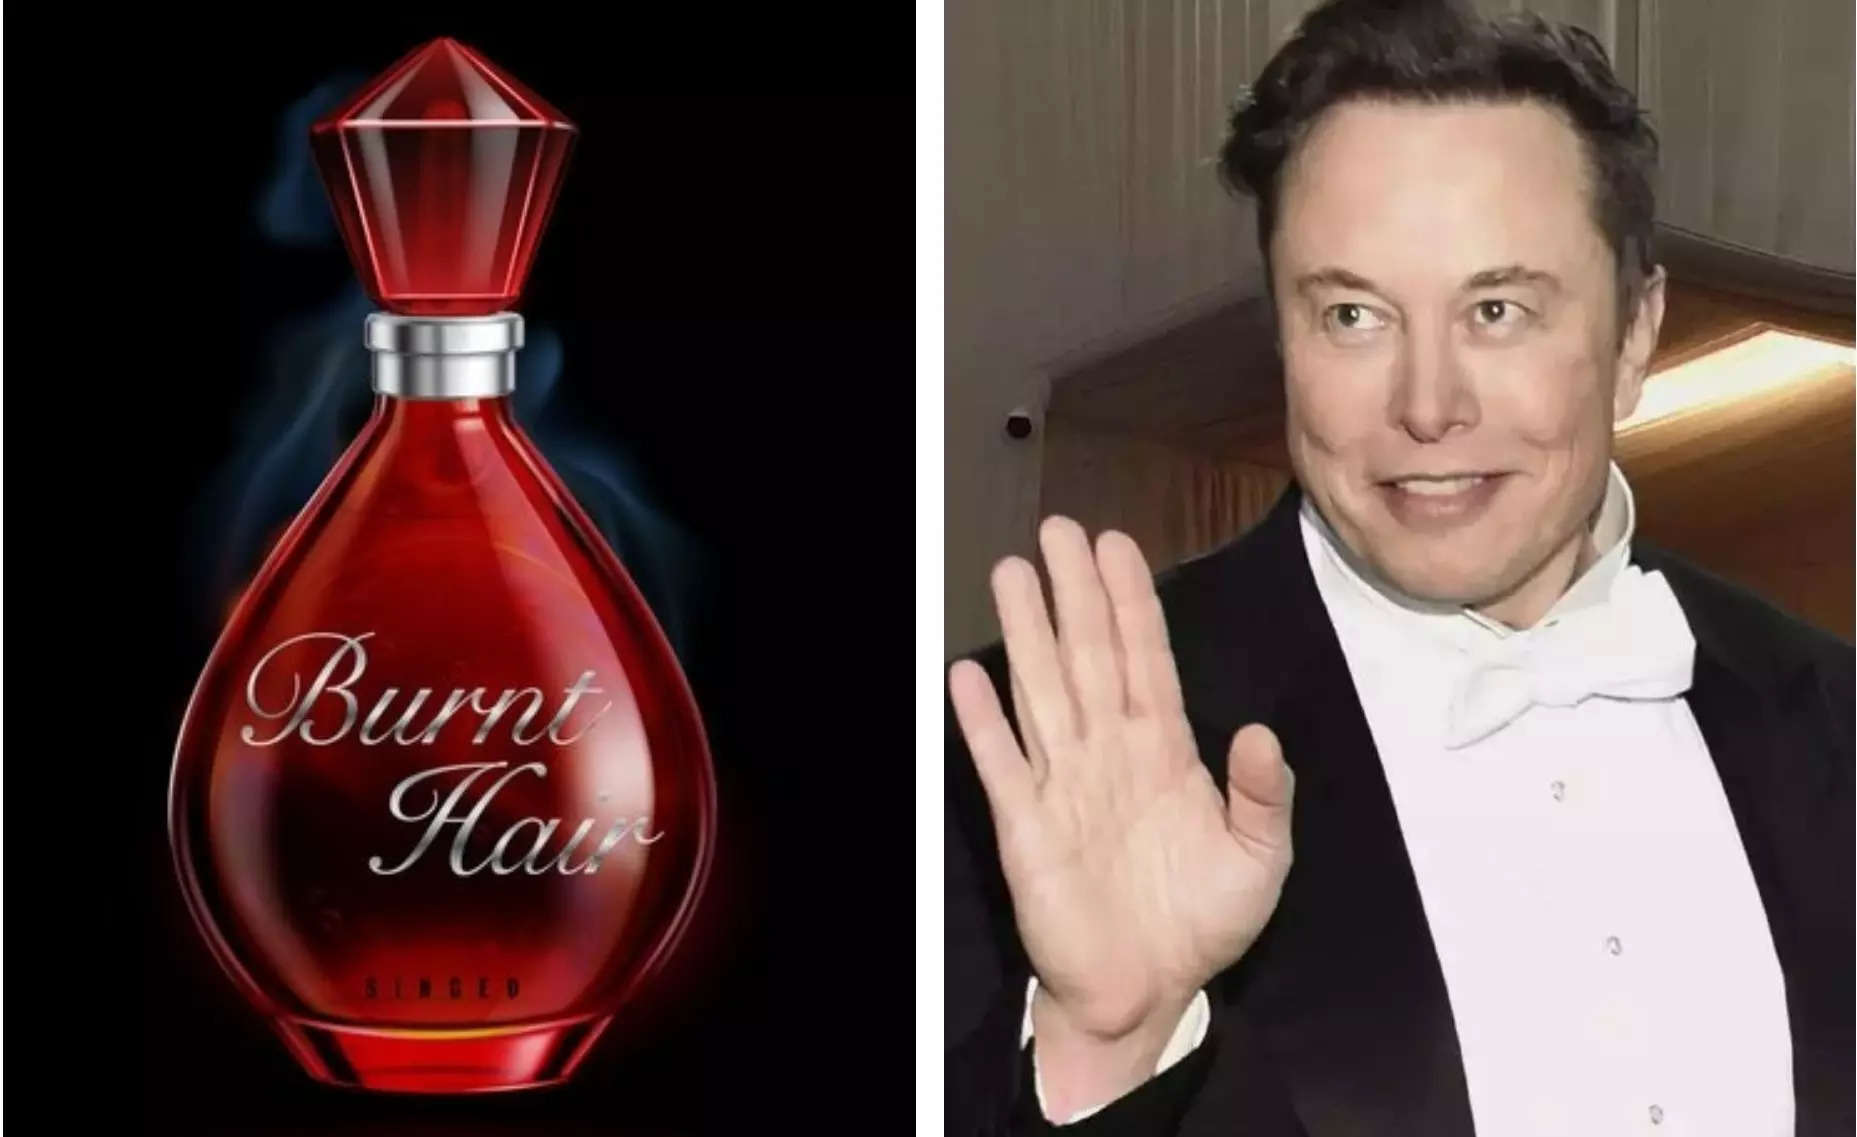 Elon Musk Perfume: एलन मस्क ने Brunt Hair ब्रांड का Perfume लांच किया,जिसे दुनिया की सबसे अच्छी खुशबू बताया है